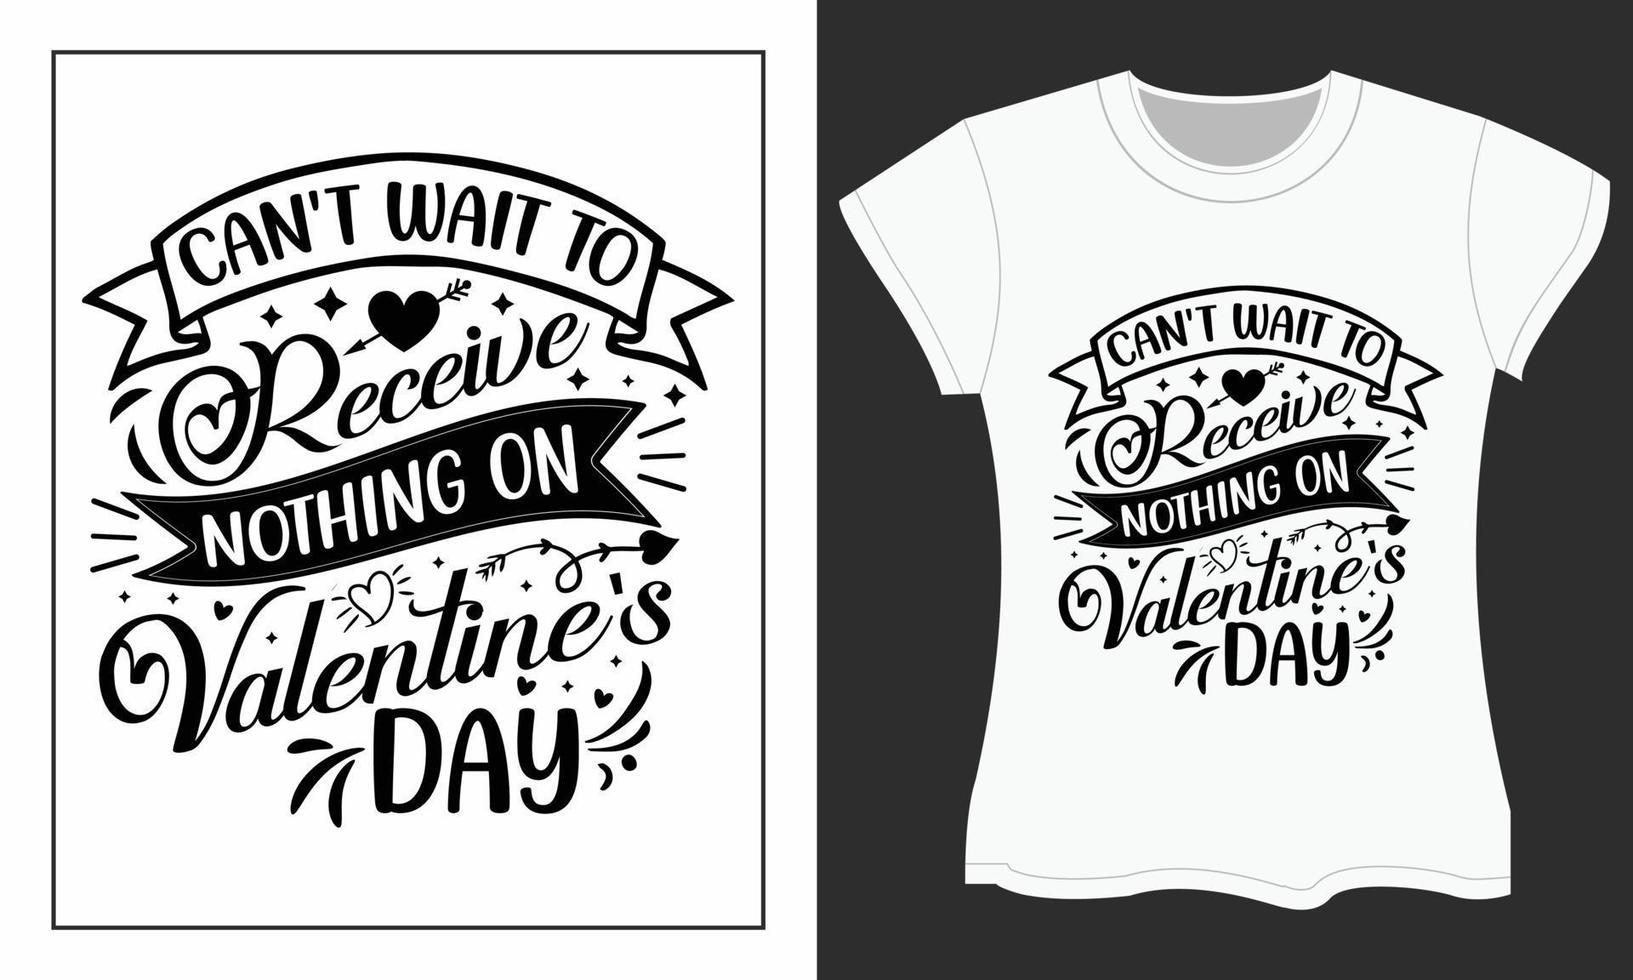 Ich kann es kaum erwarten, am Valentinstag nichts zu erhalten, Valentinstag-Svg-T-Shirt-Design. vektor